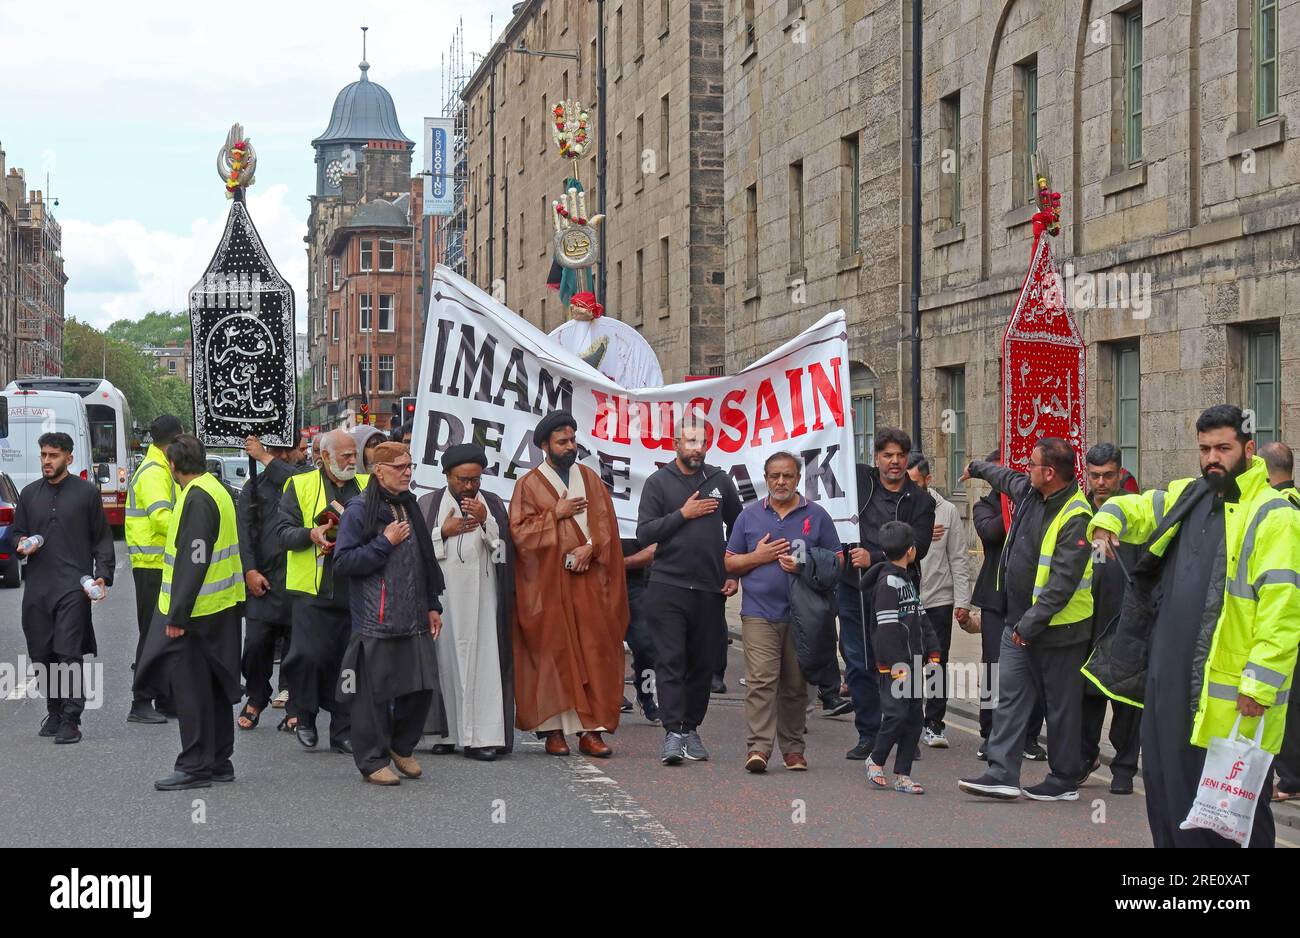 Musulmans chiites écossais, marche annuelle de l'Imam Hussain pour la paix, lecture du Coran à travers 36 Great Jct Street, Leith, Édimbourg, Écosse, Royaume-Uni, EH6 5LA Banque D'Images